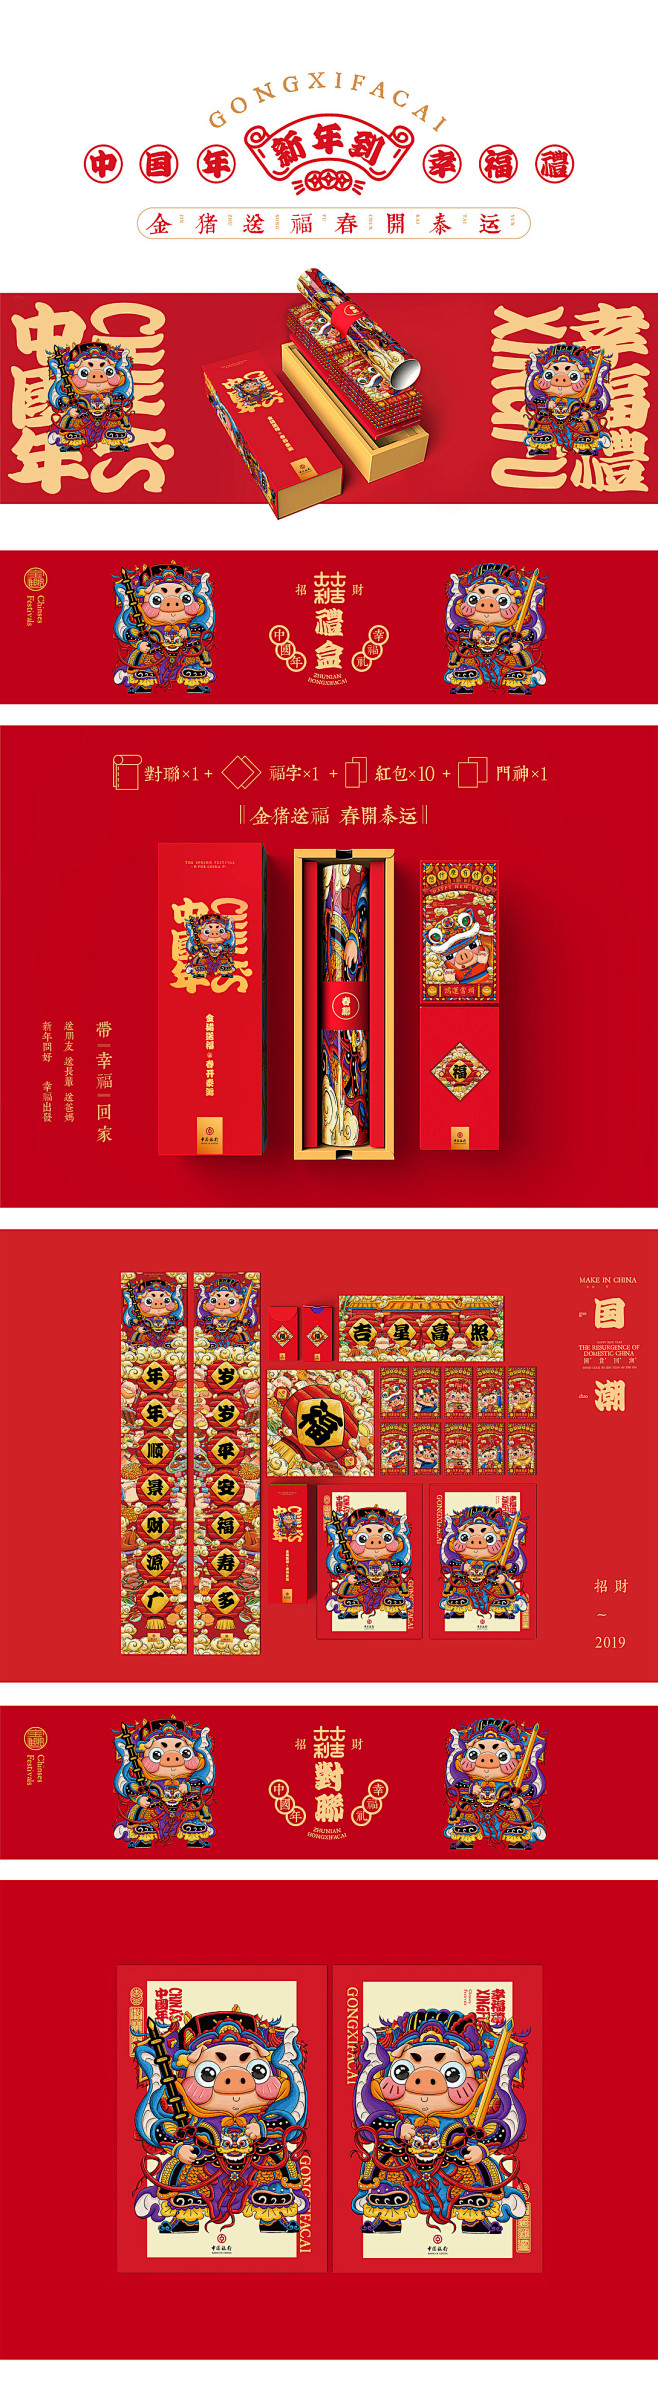 2019中国银行-猪年对联红包包装礼盒-...